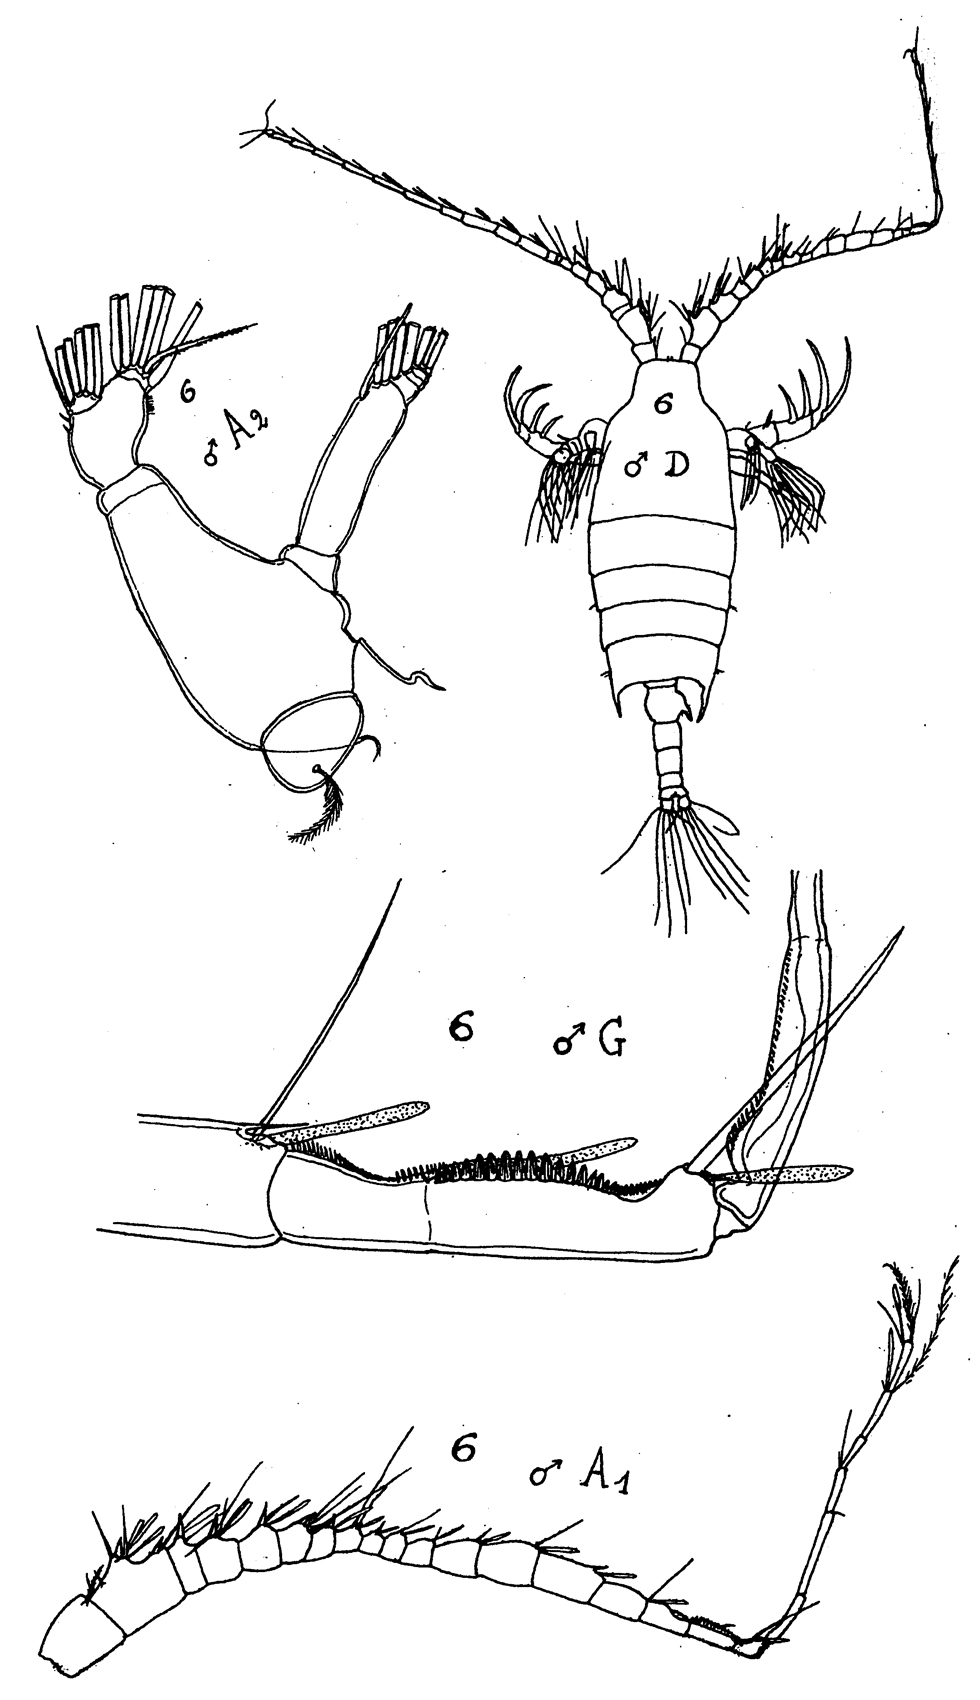 Espèce Candacia bipinnata - Planche 14 de figures morphologiques